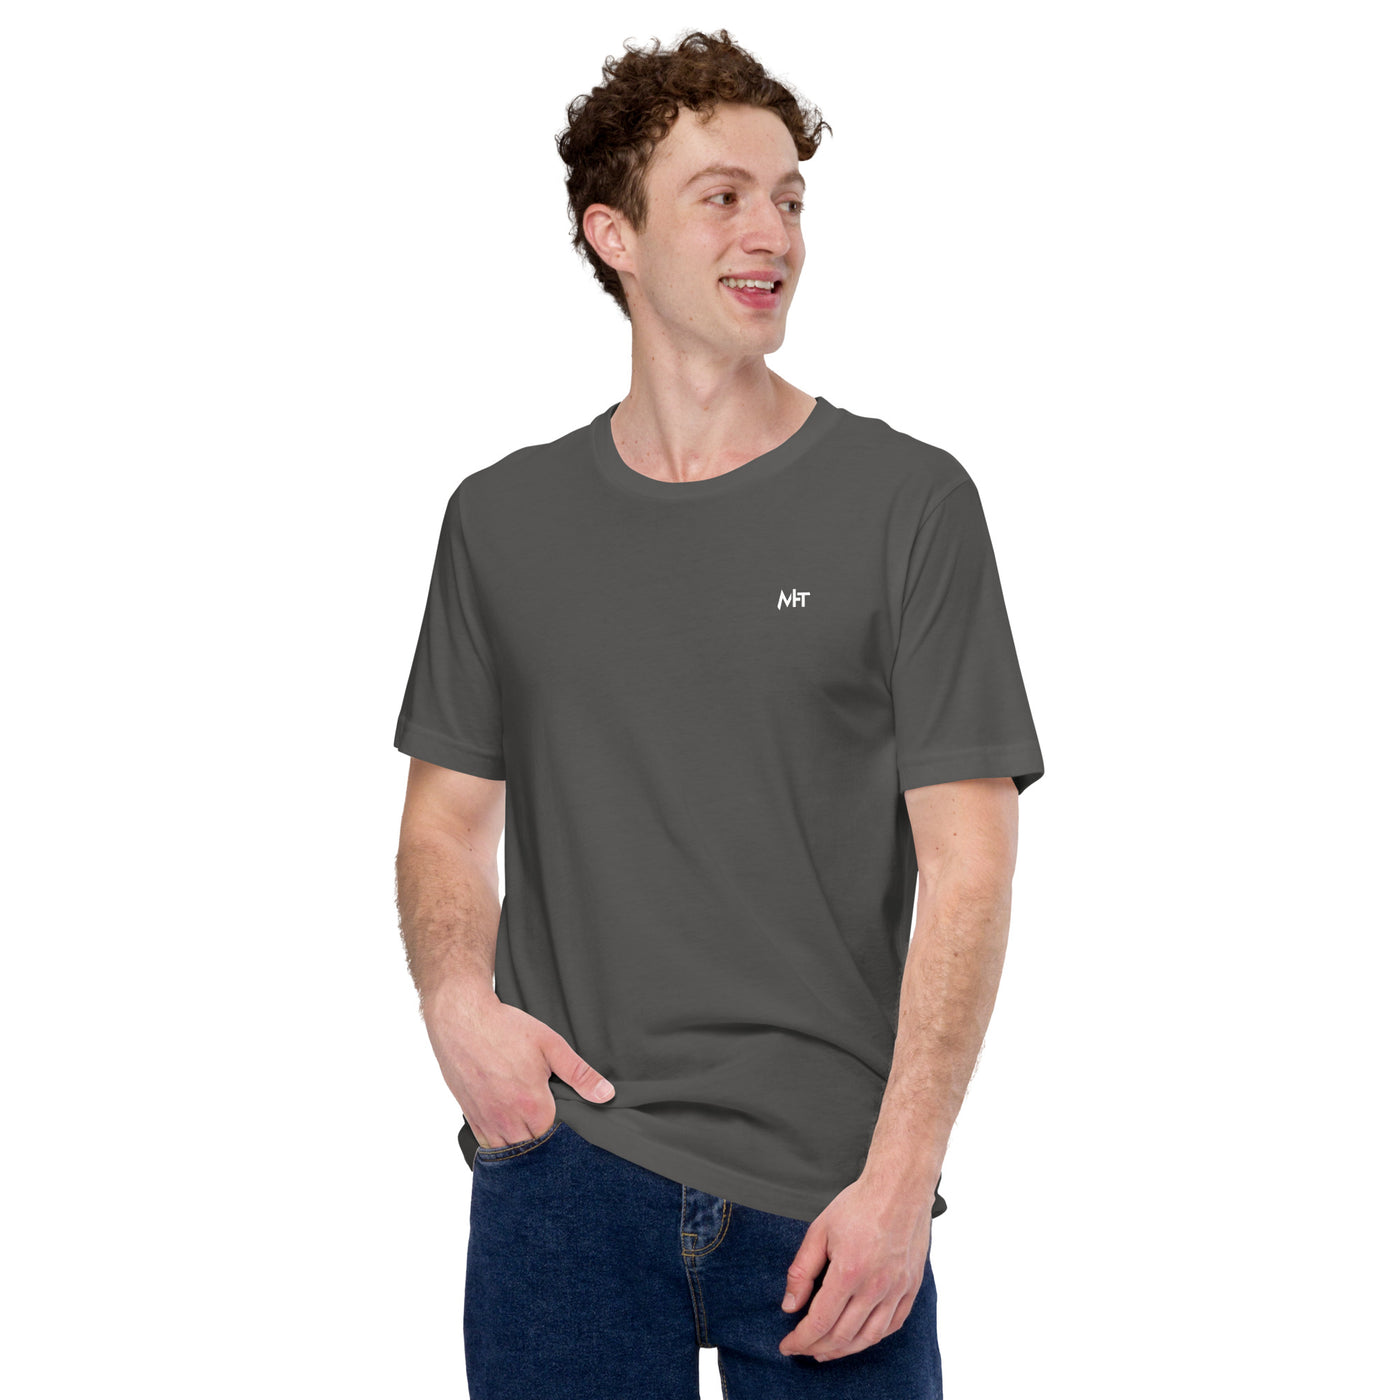 Toddler Bitcoin T-rex Holder - Unisex t-shirt ( Back Print )